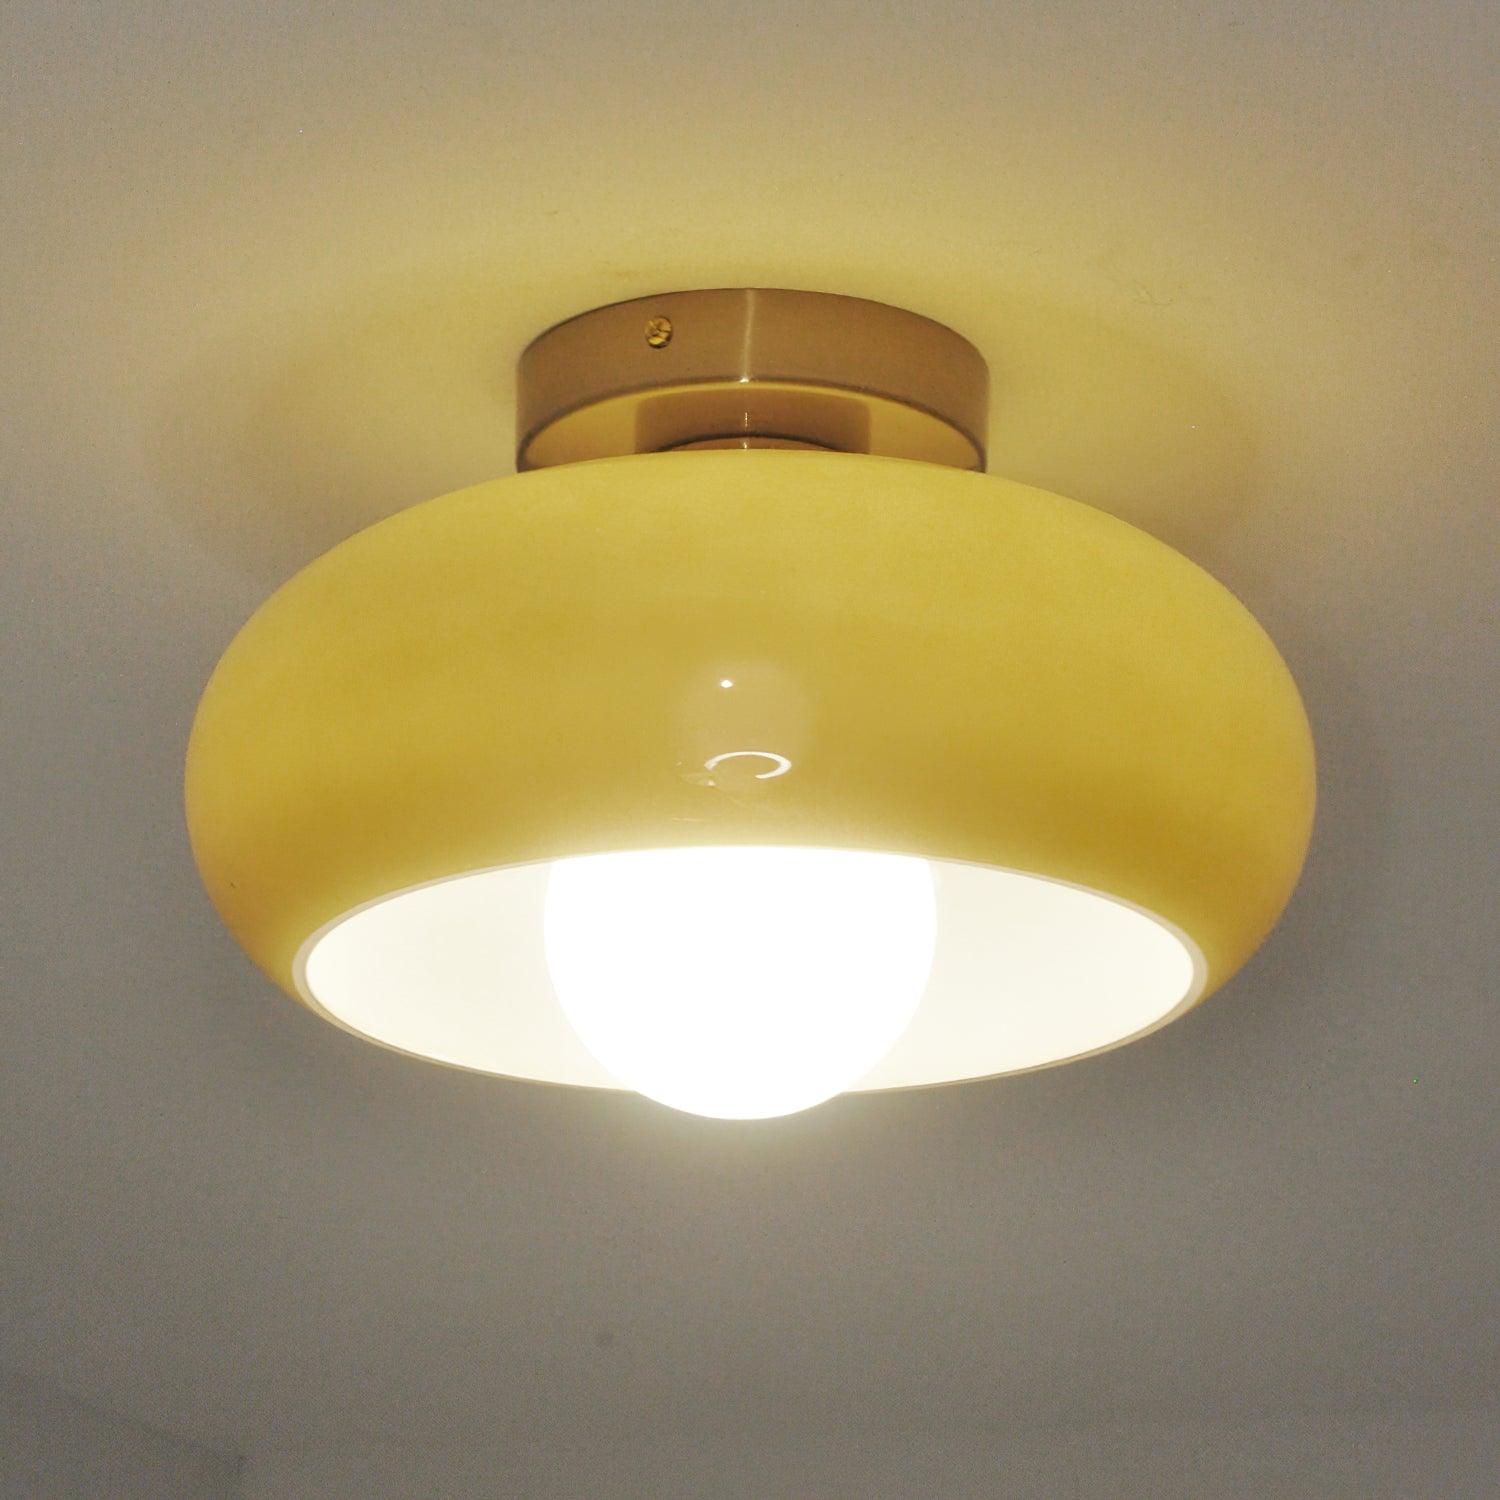 Quadri Foglio Ceiling Lamp - Decormote